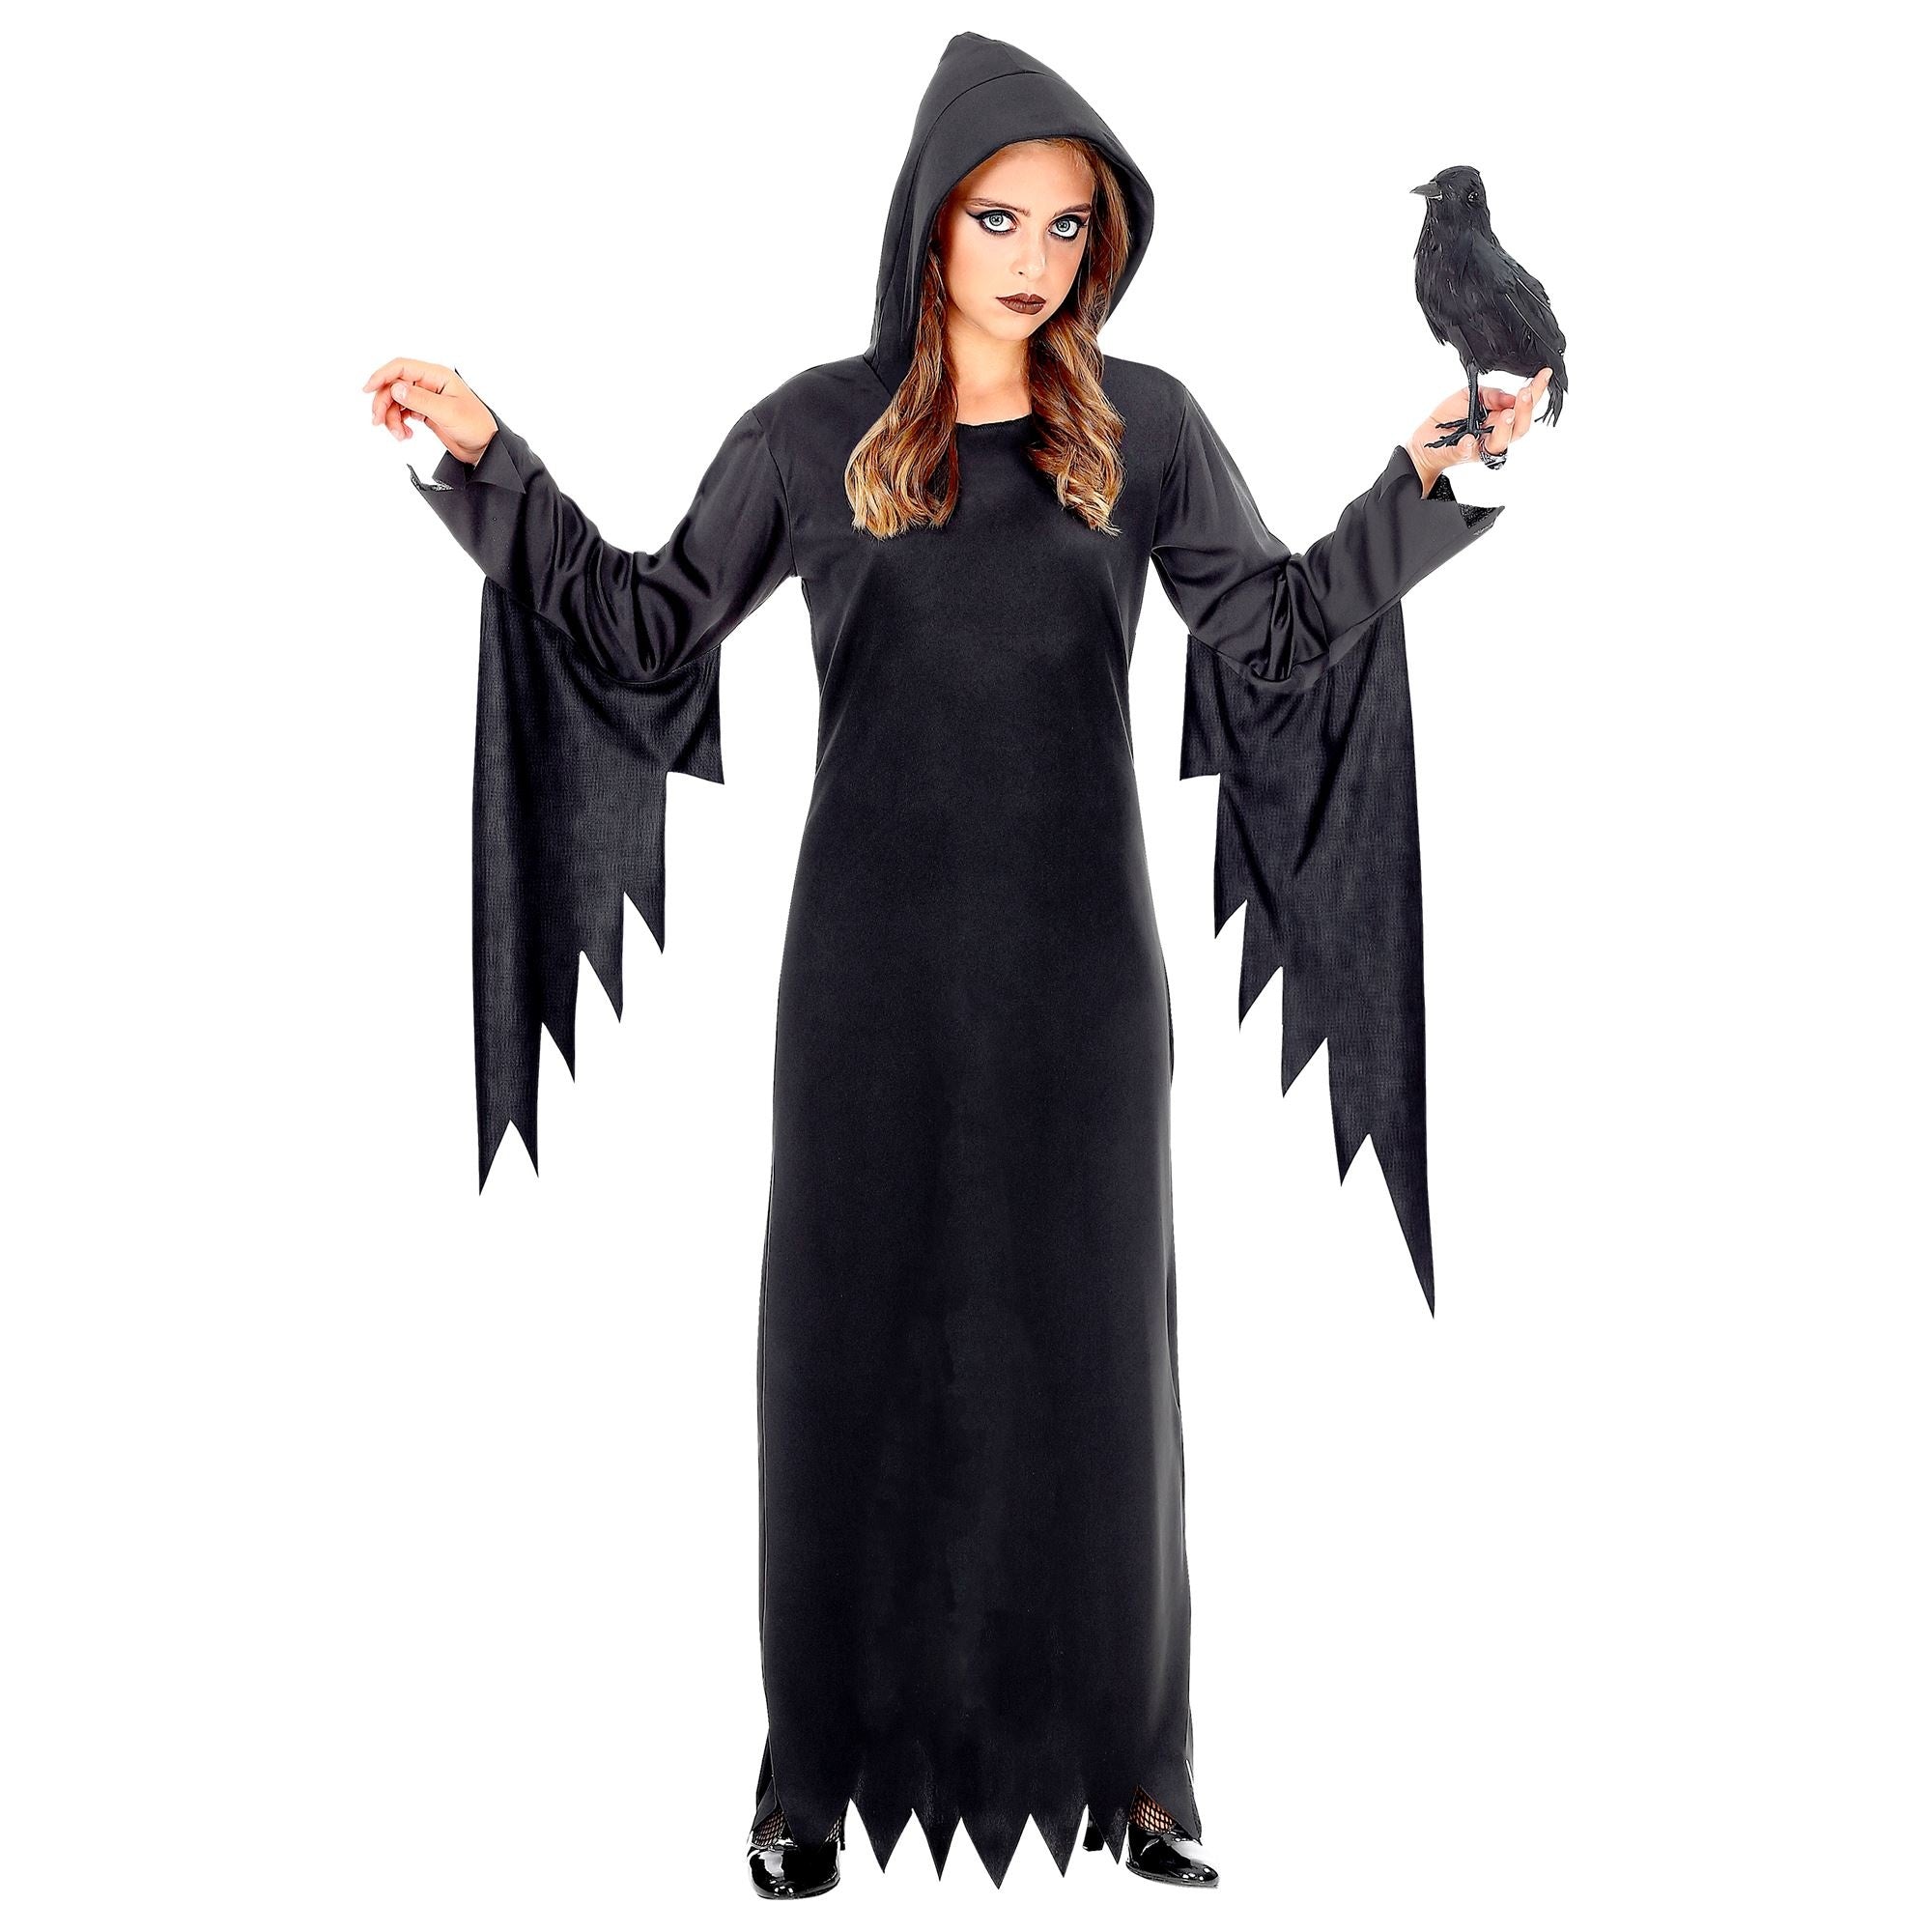 Widmann - Heks & Spider Lady & Voodoo & Duistere Religie Kostuum - Gotische Voodoo Koningin Duistere Zaken - Meisje - zwart - Maat 128 - Halloween - Verkleedkleding